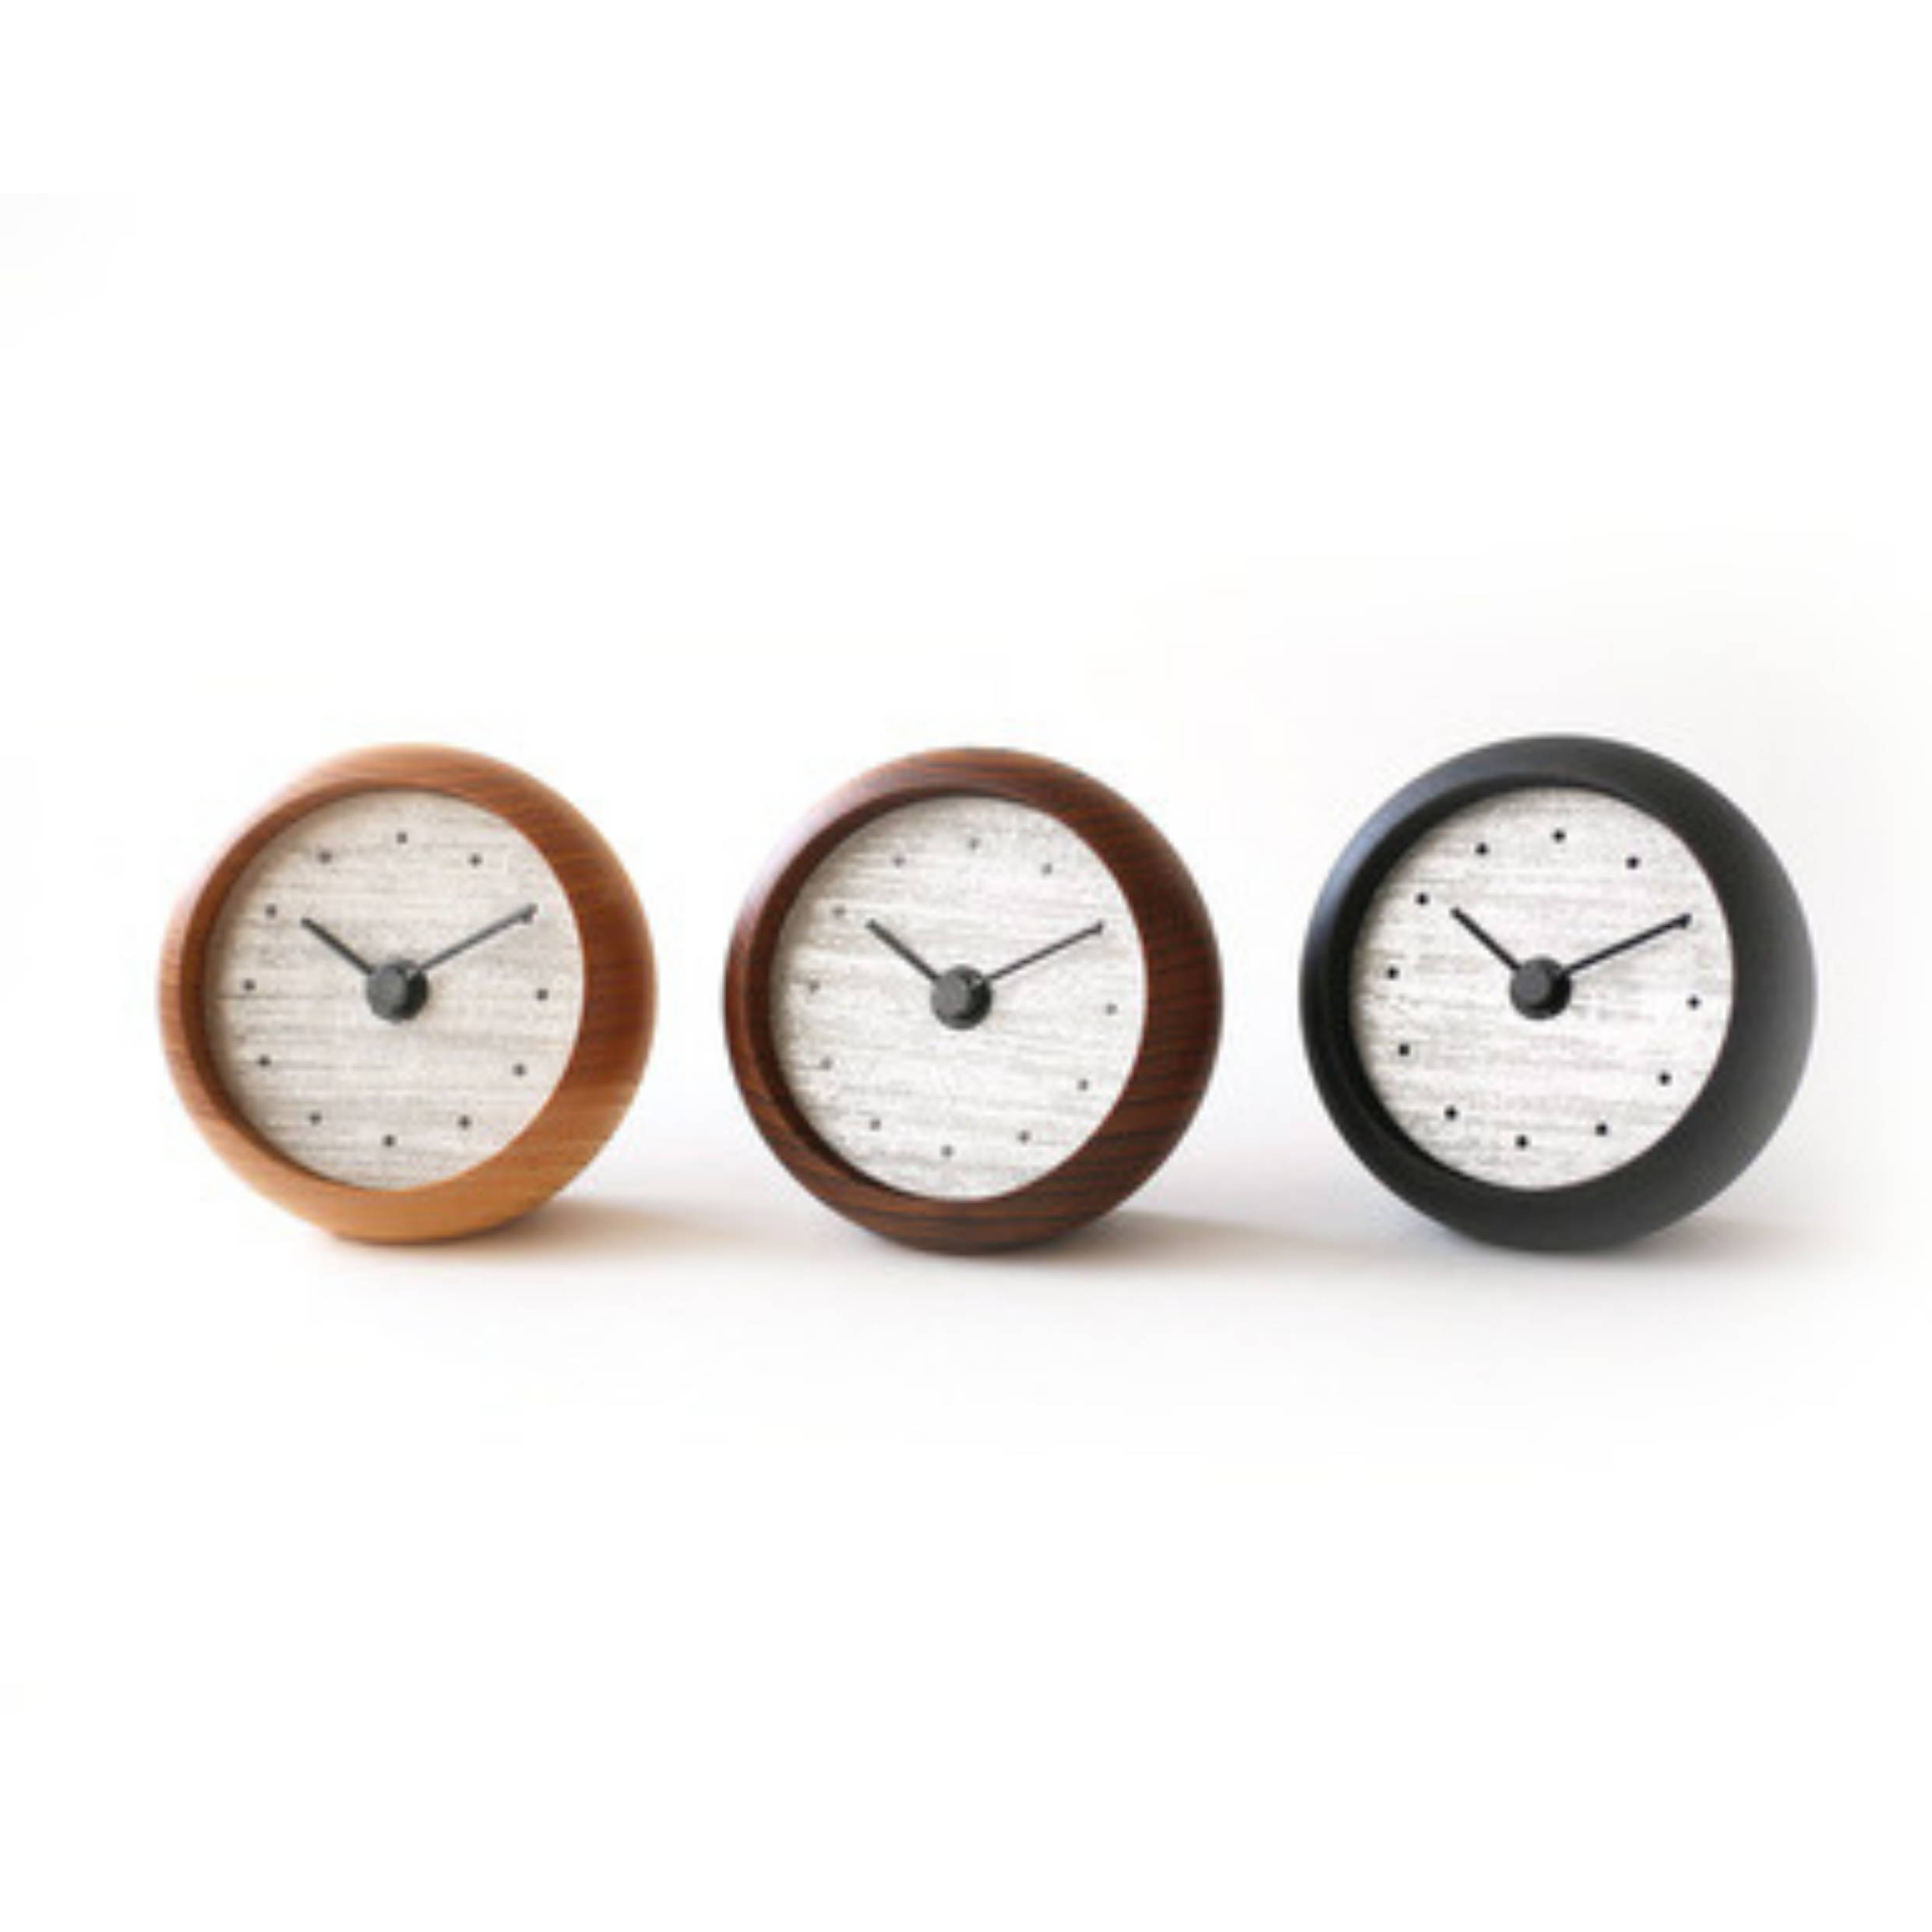 置時計 | 摺箔 | 白金(プラチナ) | 選べる木枠3種 | シーブレーン